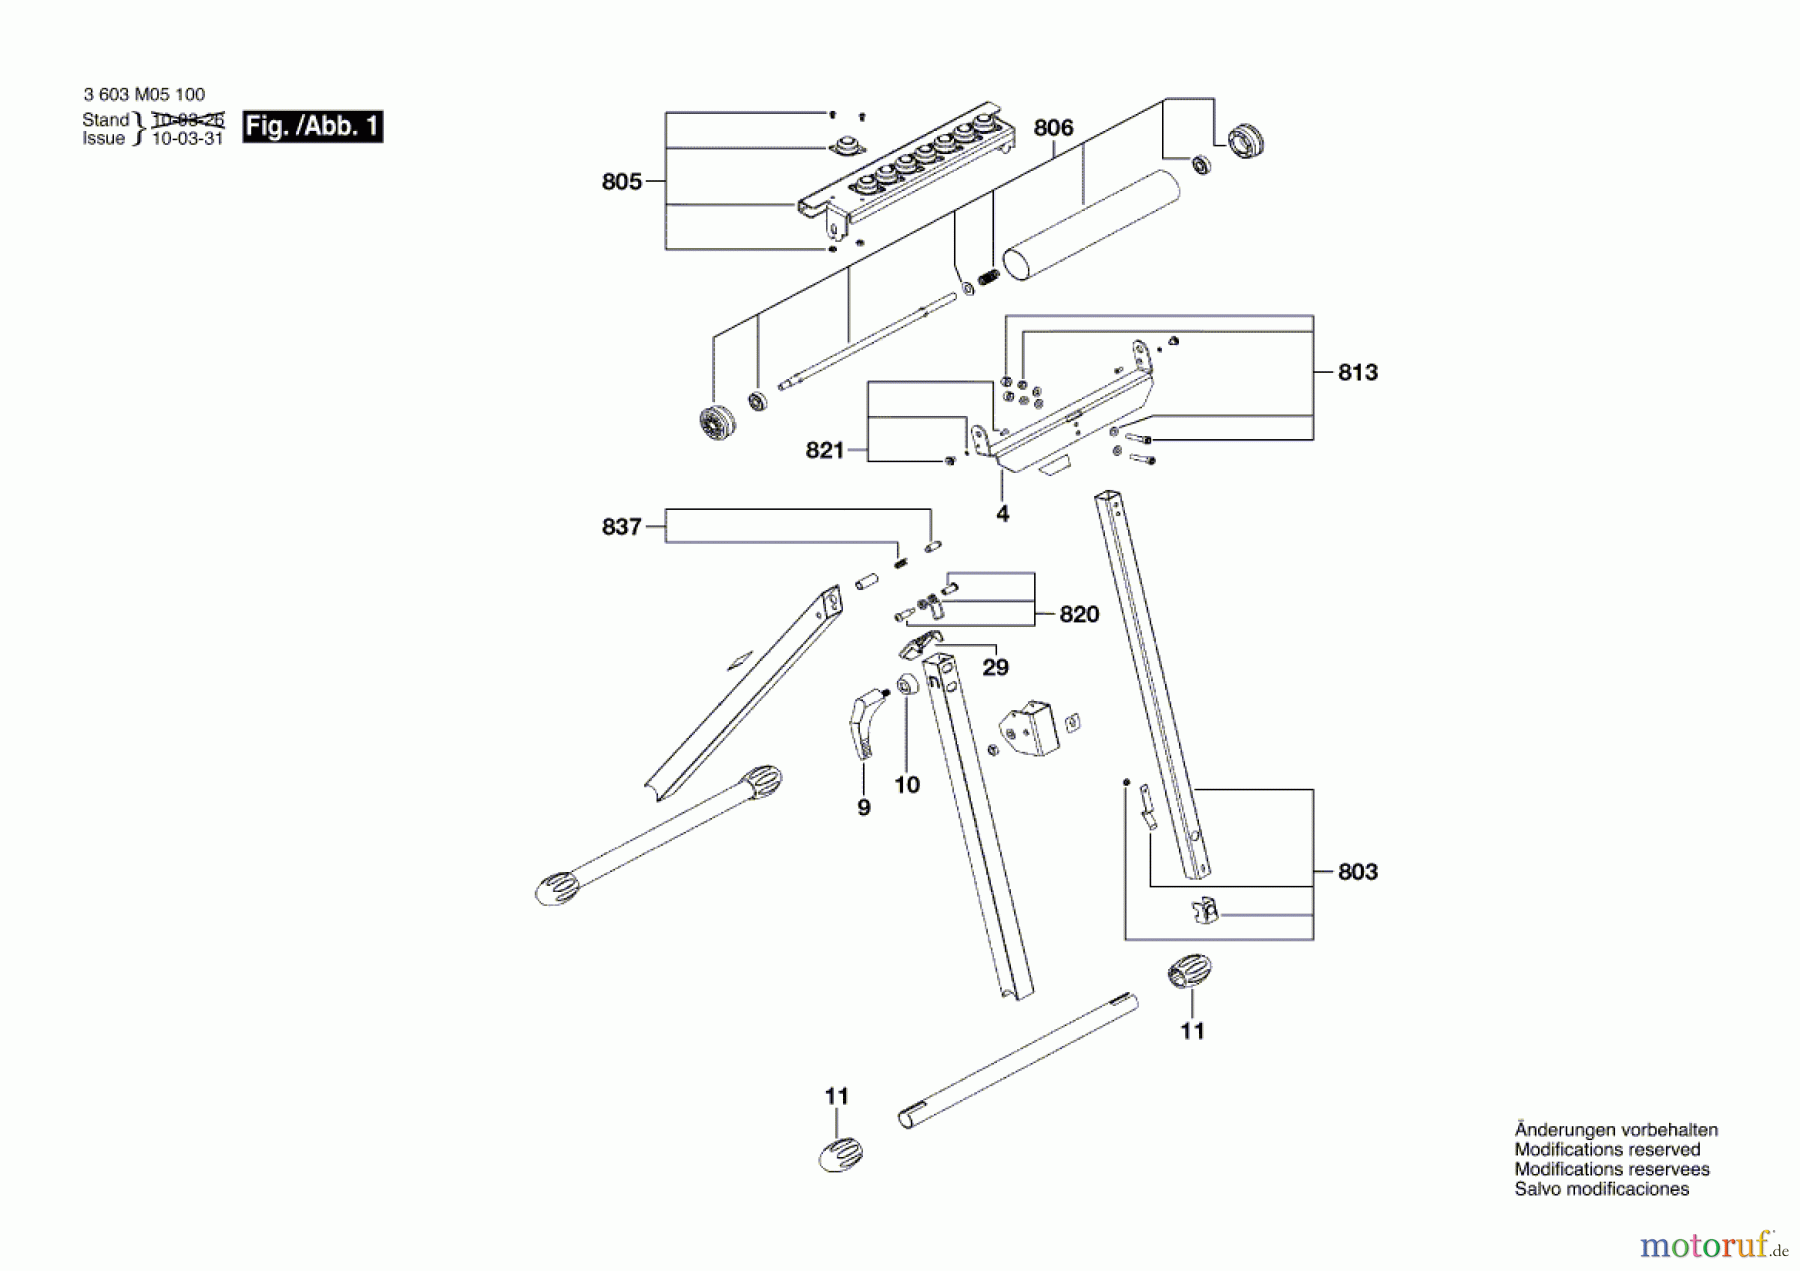  Bosch Werkzeug Montagewerkzeug PTA 1000 Seite 1